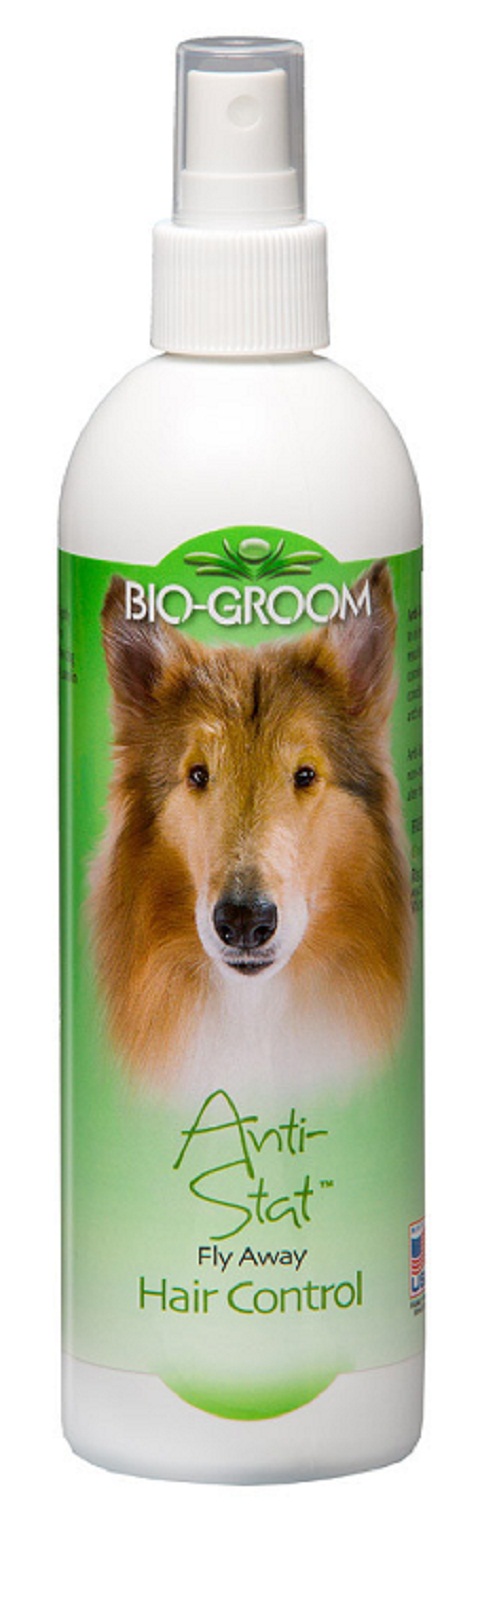 Лосьон для собак Bio-Groom Anti-Stat антистатический, 355 мл